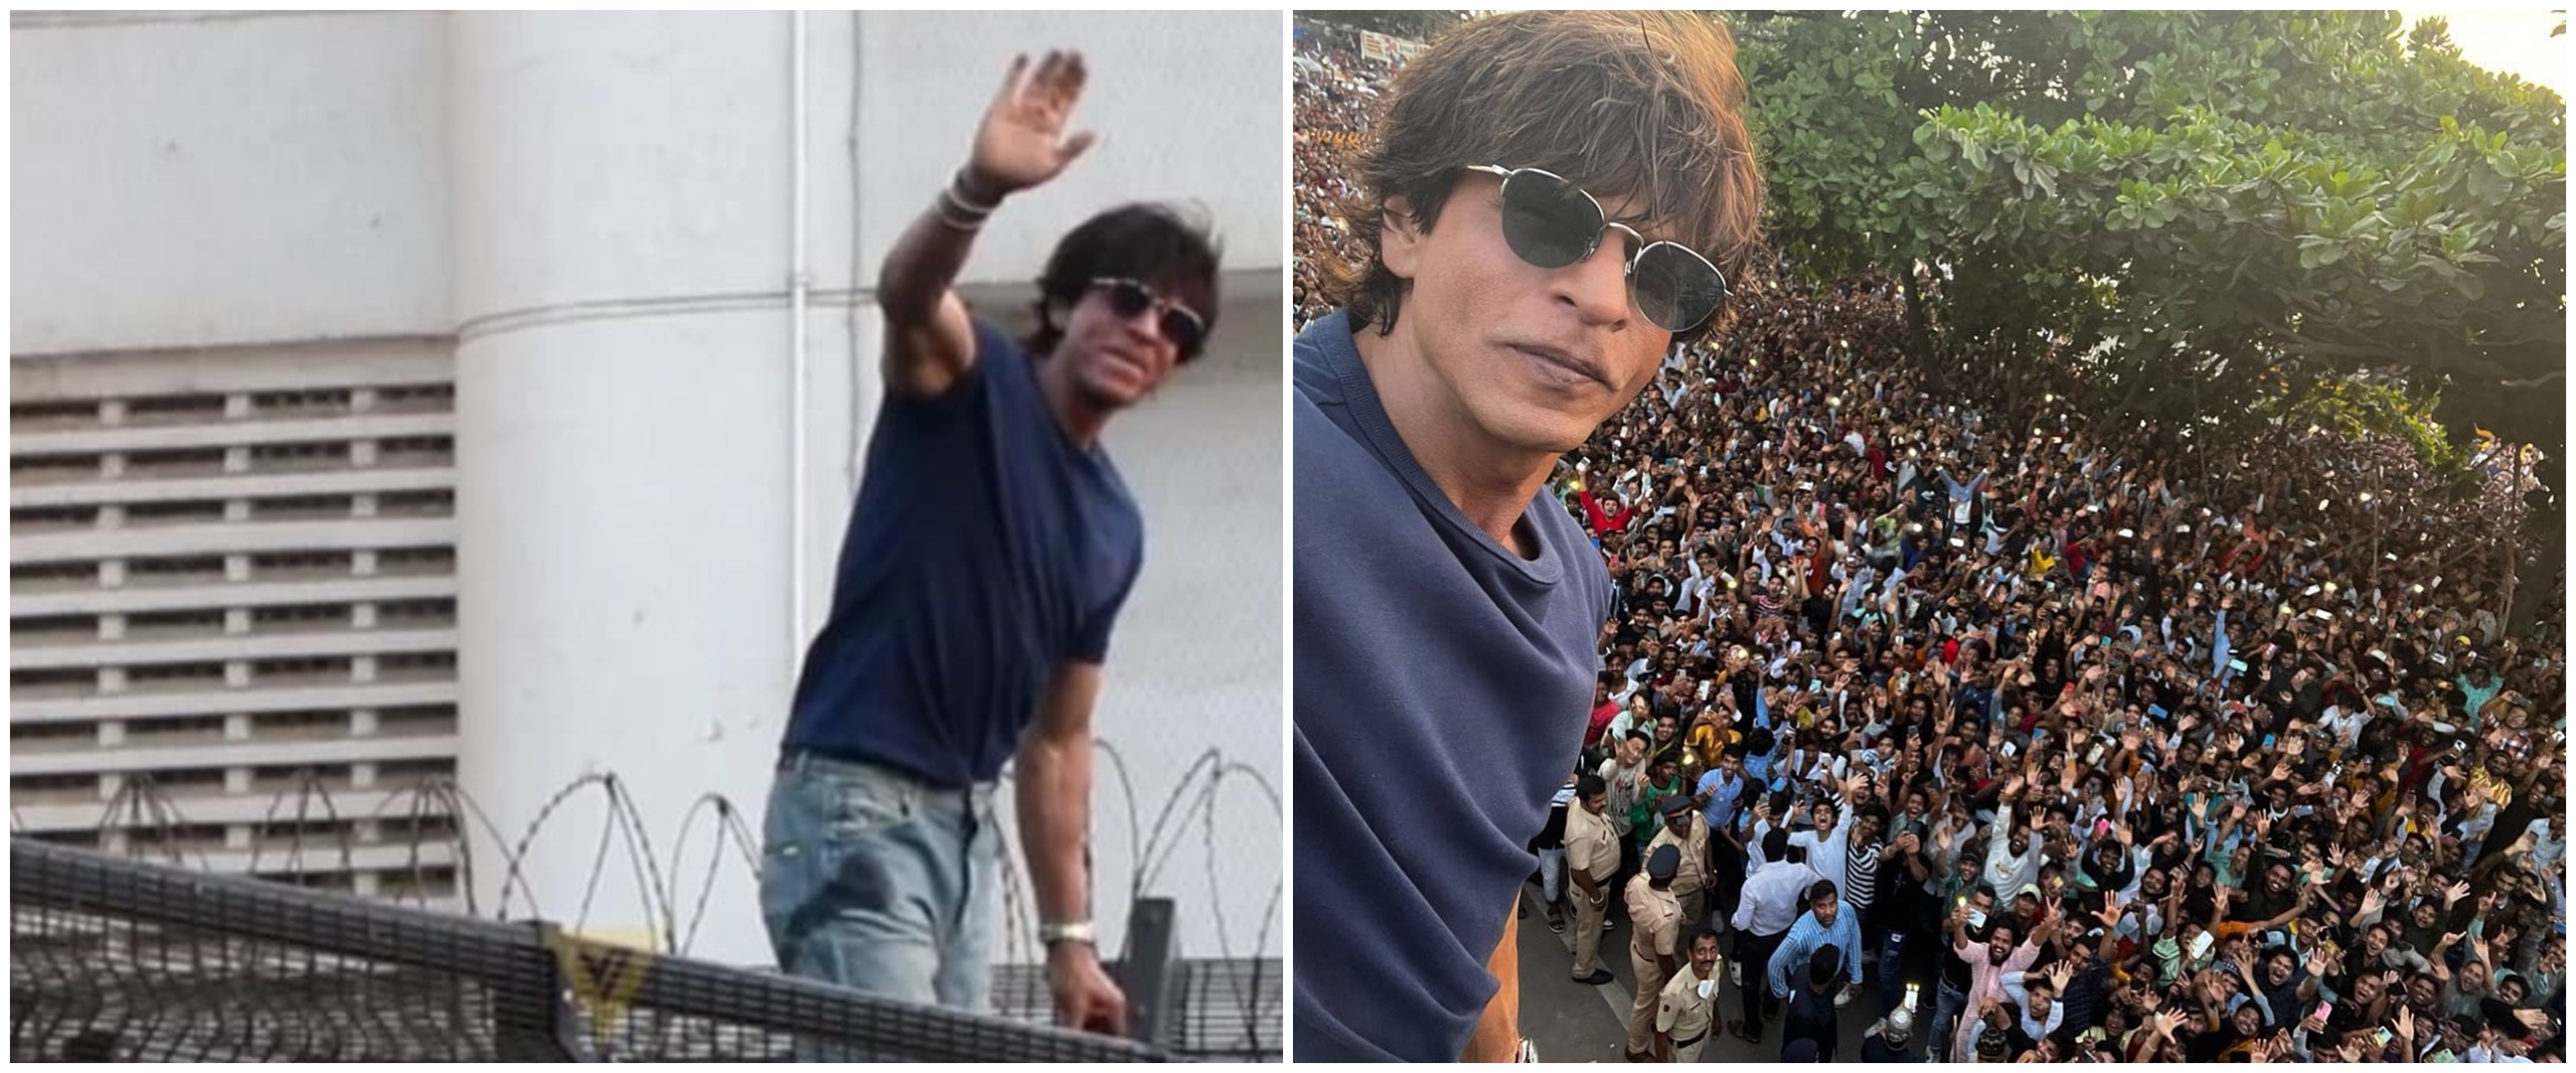 Rayakan momen Lebaran, rumah Shah Rukh Khan dipadati ribuan fans